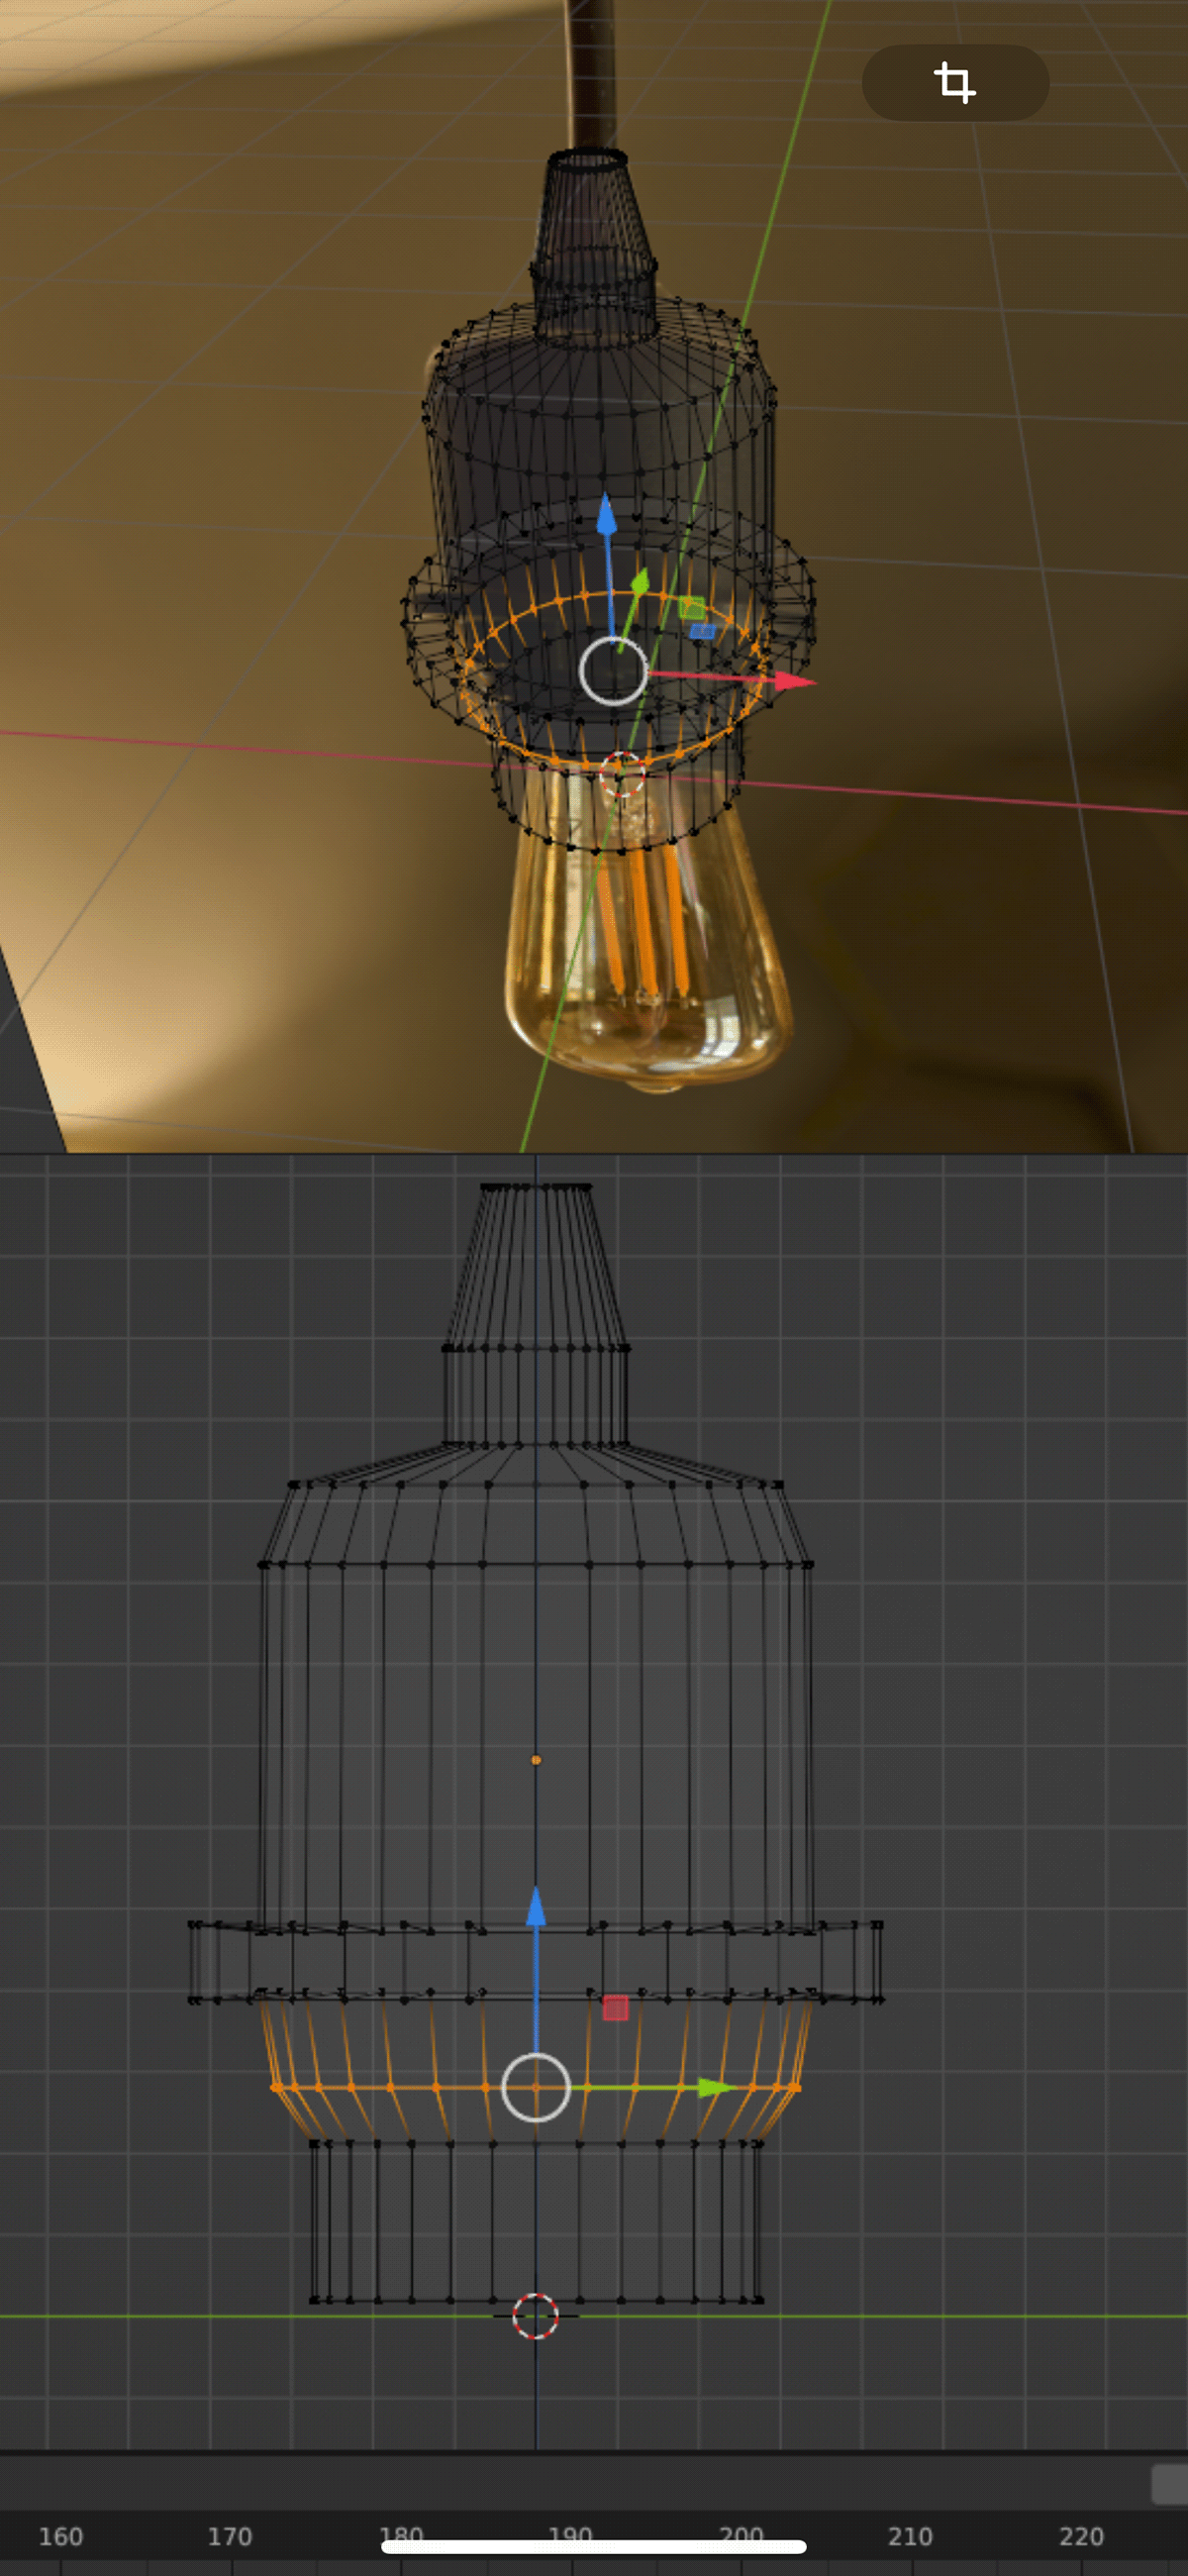 Retro lampe bulb 3D blender CGI wohnzimmer glühbirne